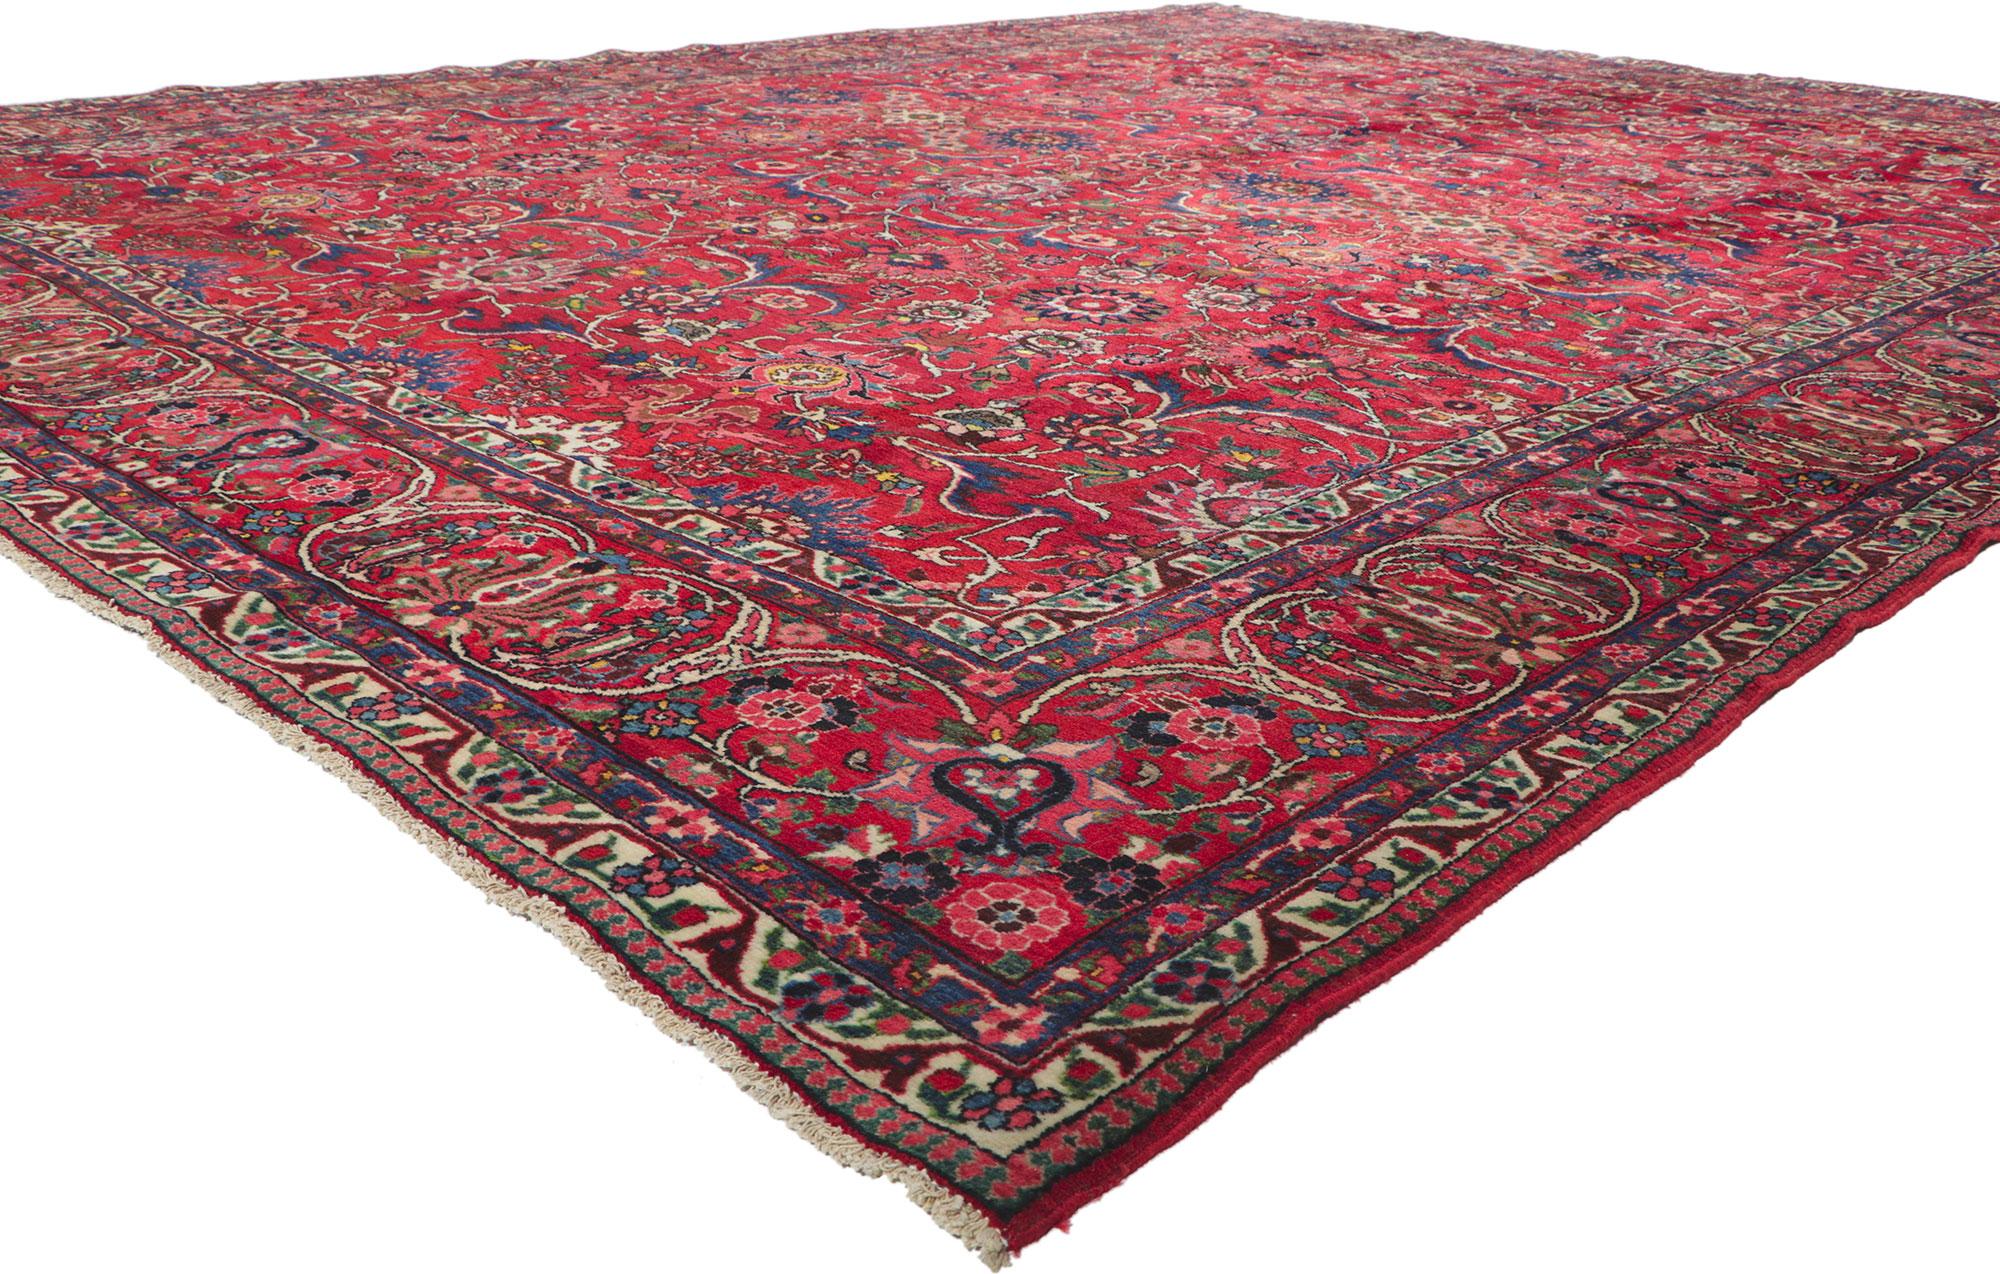 61109 Antiker persischer Bakhtiari-Teppich, 10'09 x 13'09.
Mit seinem zeitlosen Stil, seinen unglaublichen Details und seiner Textur ist dieser handgeknüpfte antike persische Bachtiari-Teppich aus Wolle eine fesselnde Vision gewebter Schönheit. Das